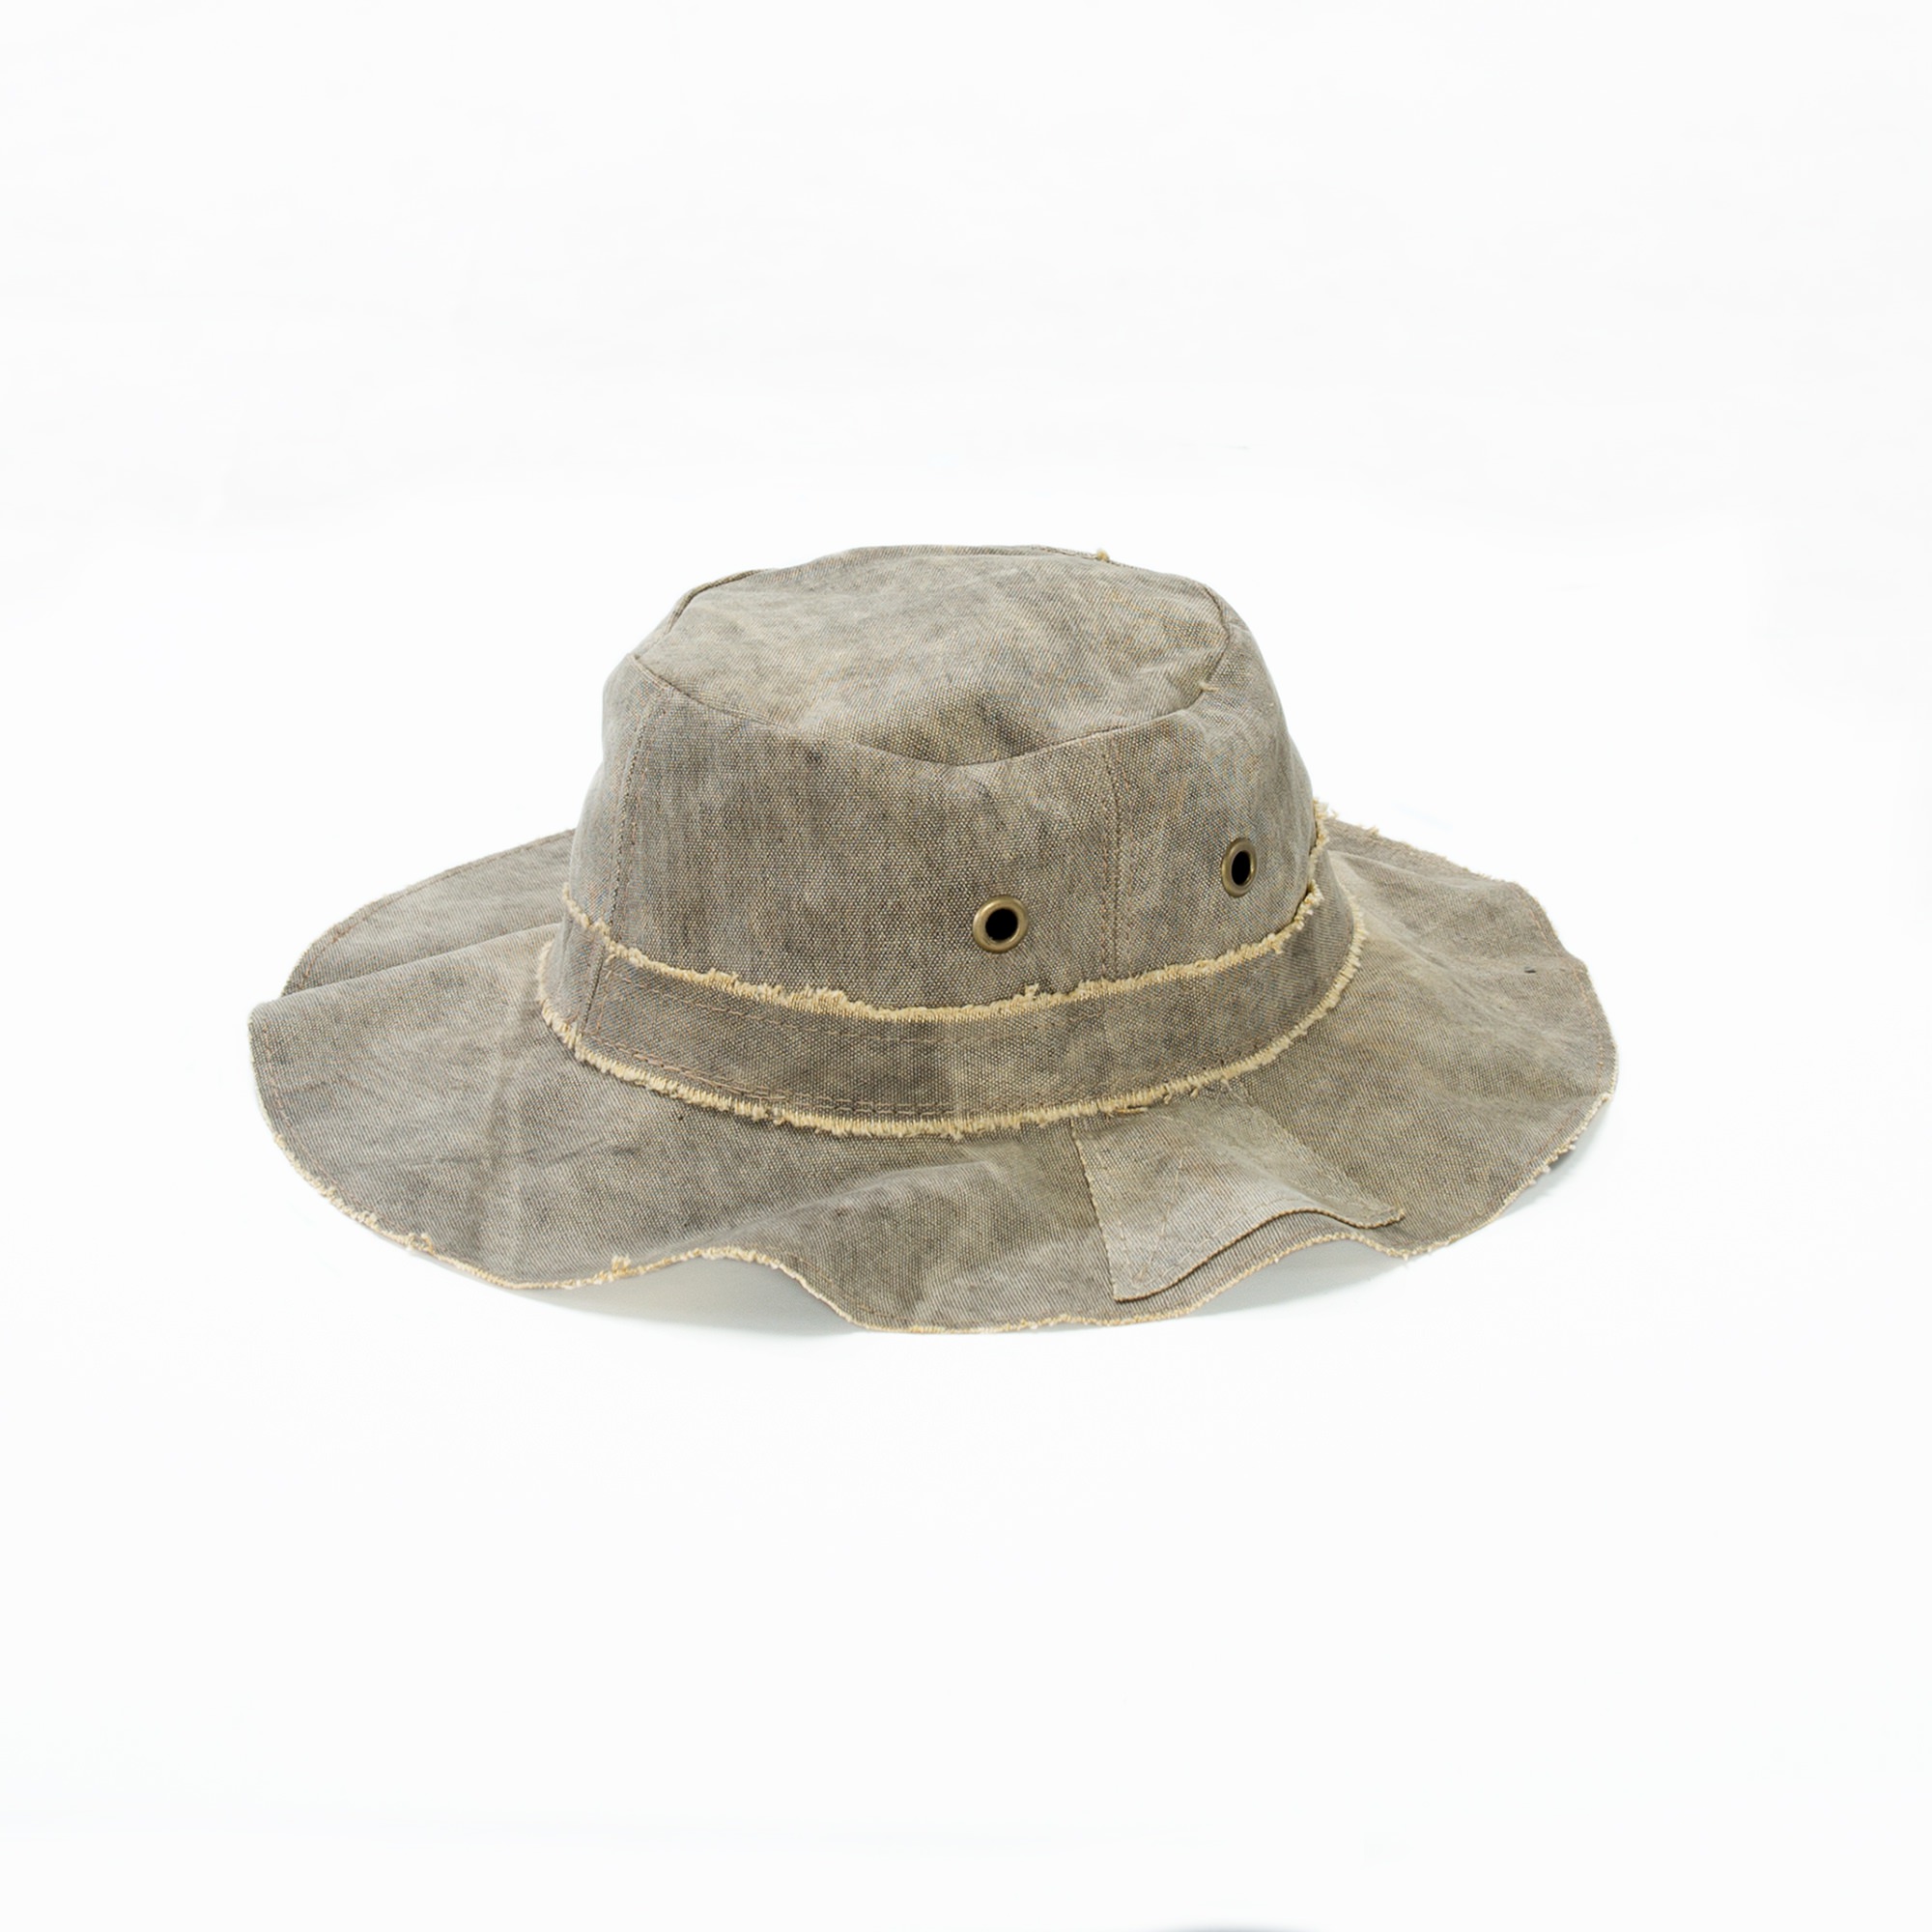 Original Real Deal Brazil Tarp Hat